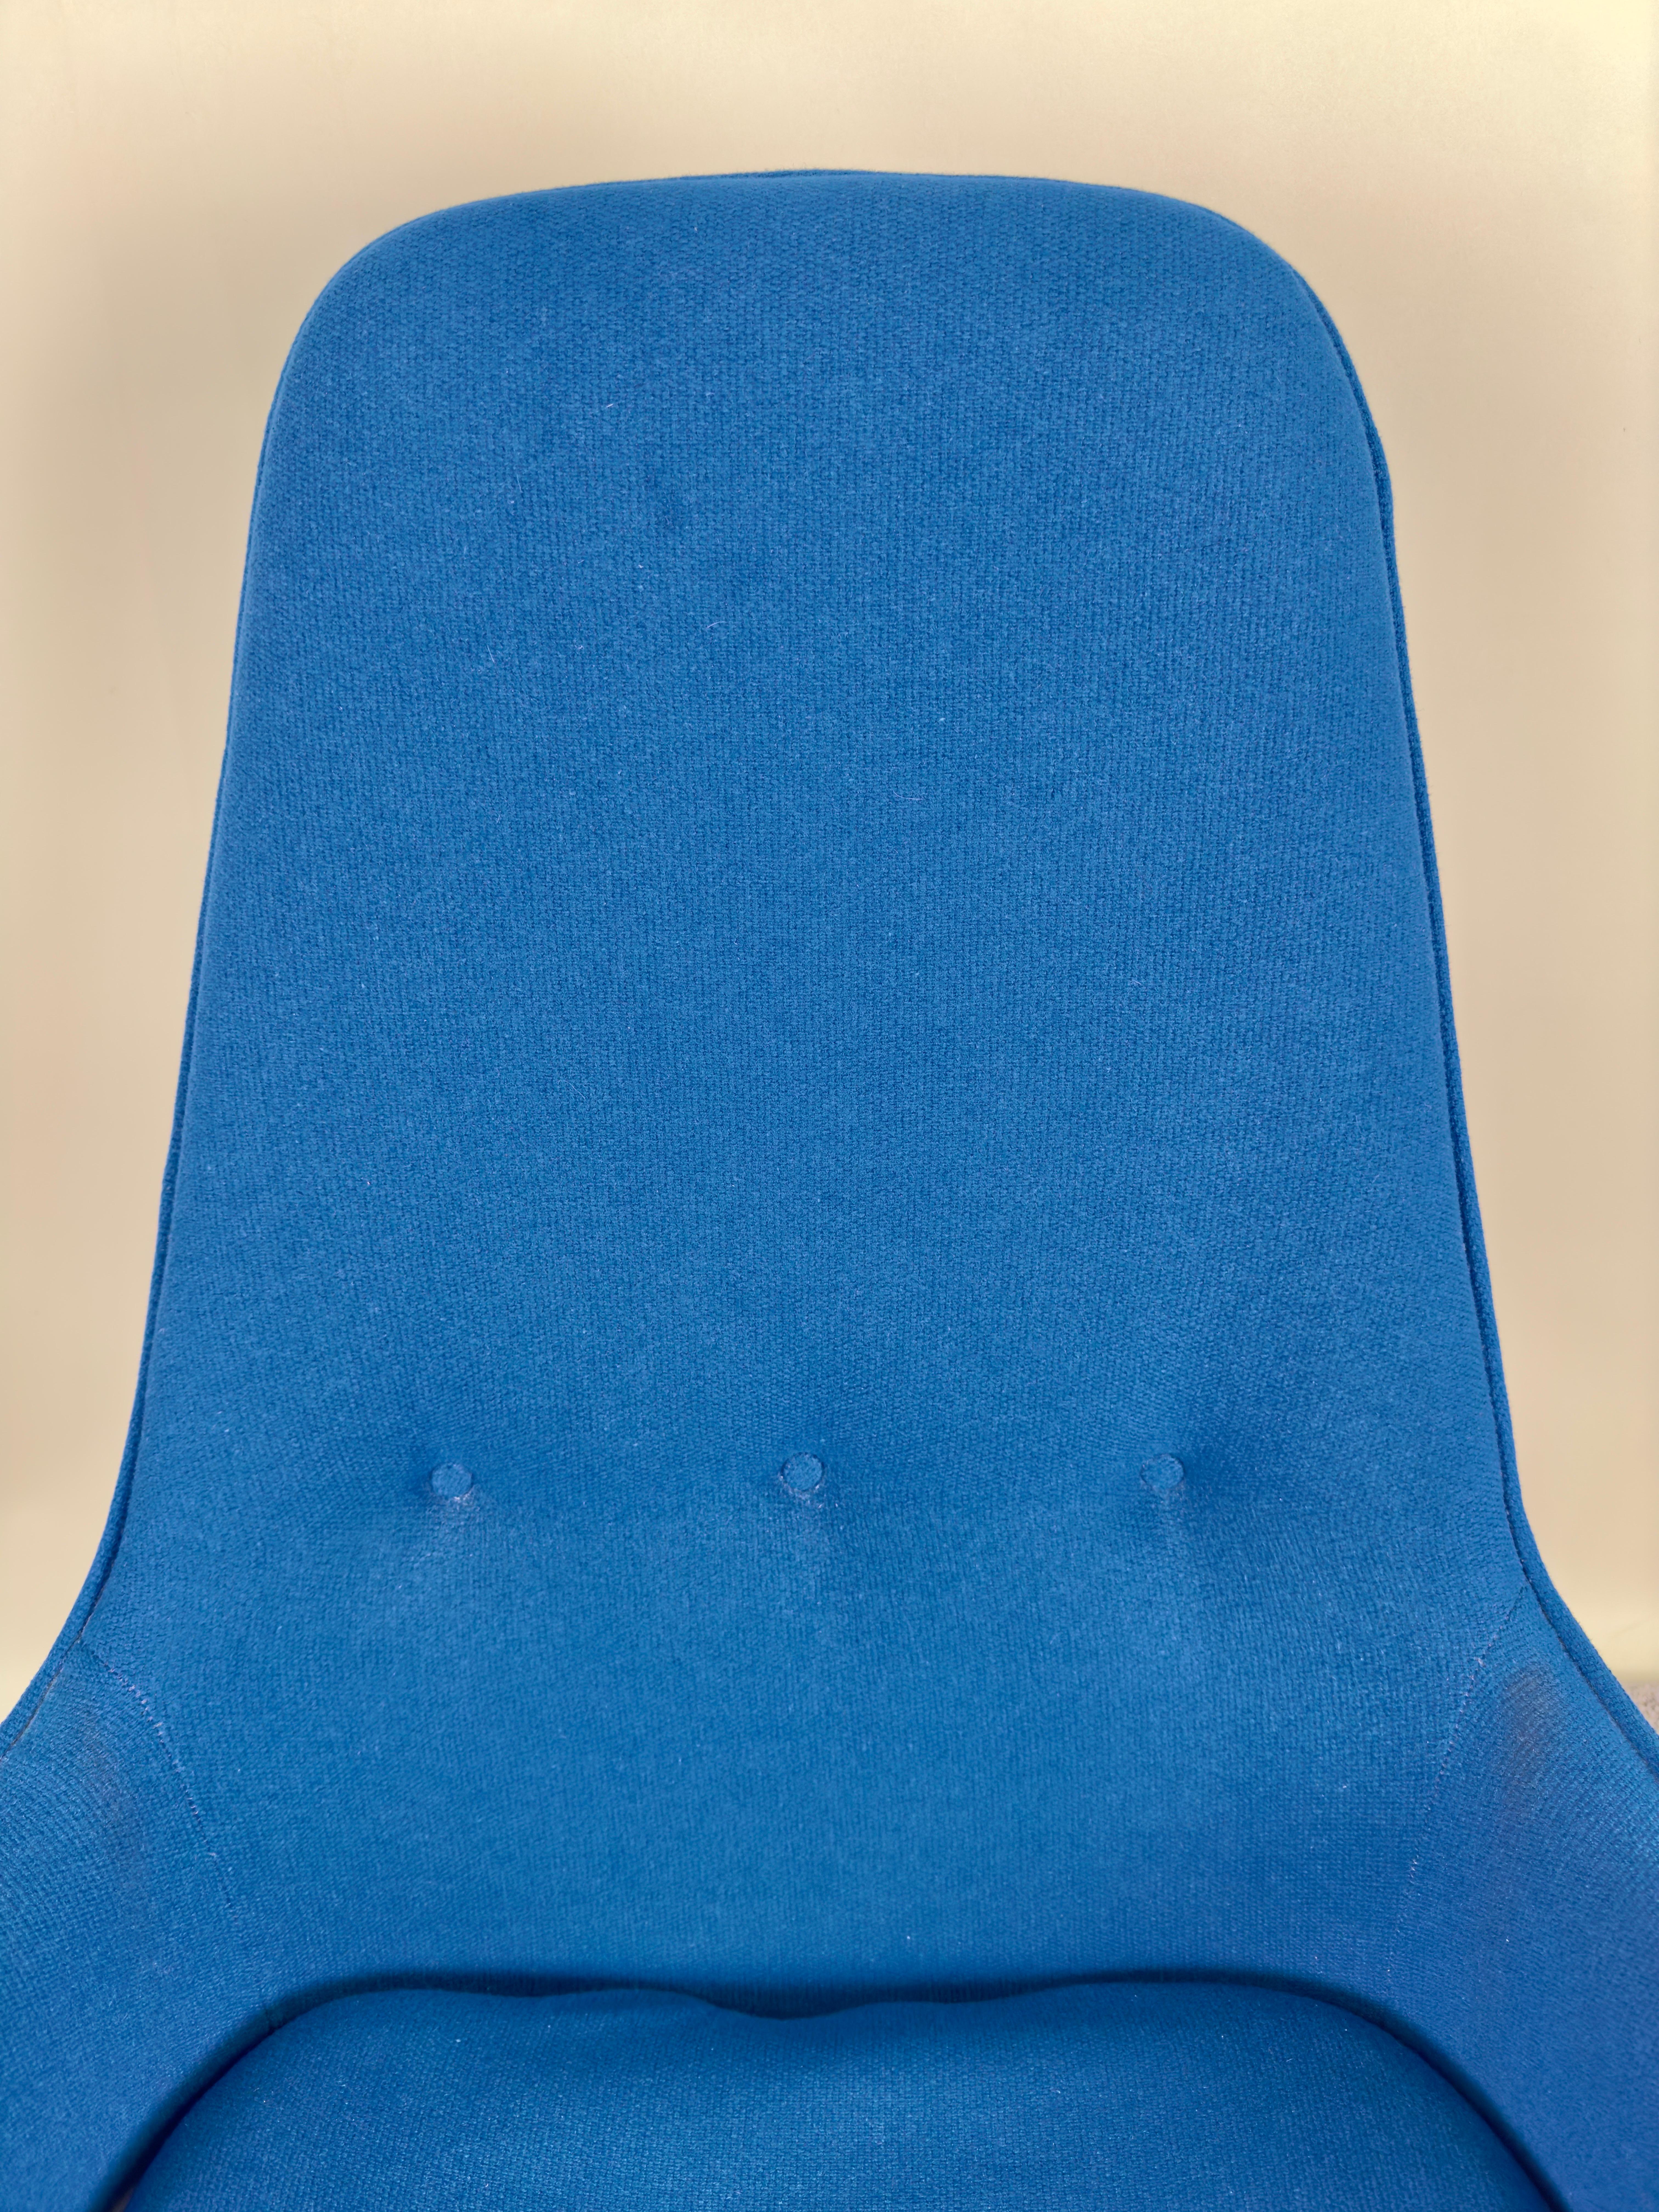 Mid Century Modern Scandinavian Walnut Barrel  Armchair in Blue Upholstery  For Sale 2